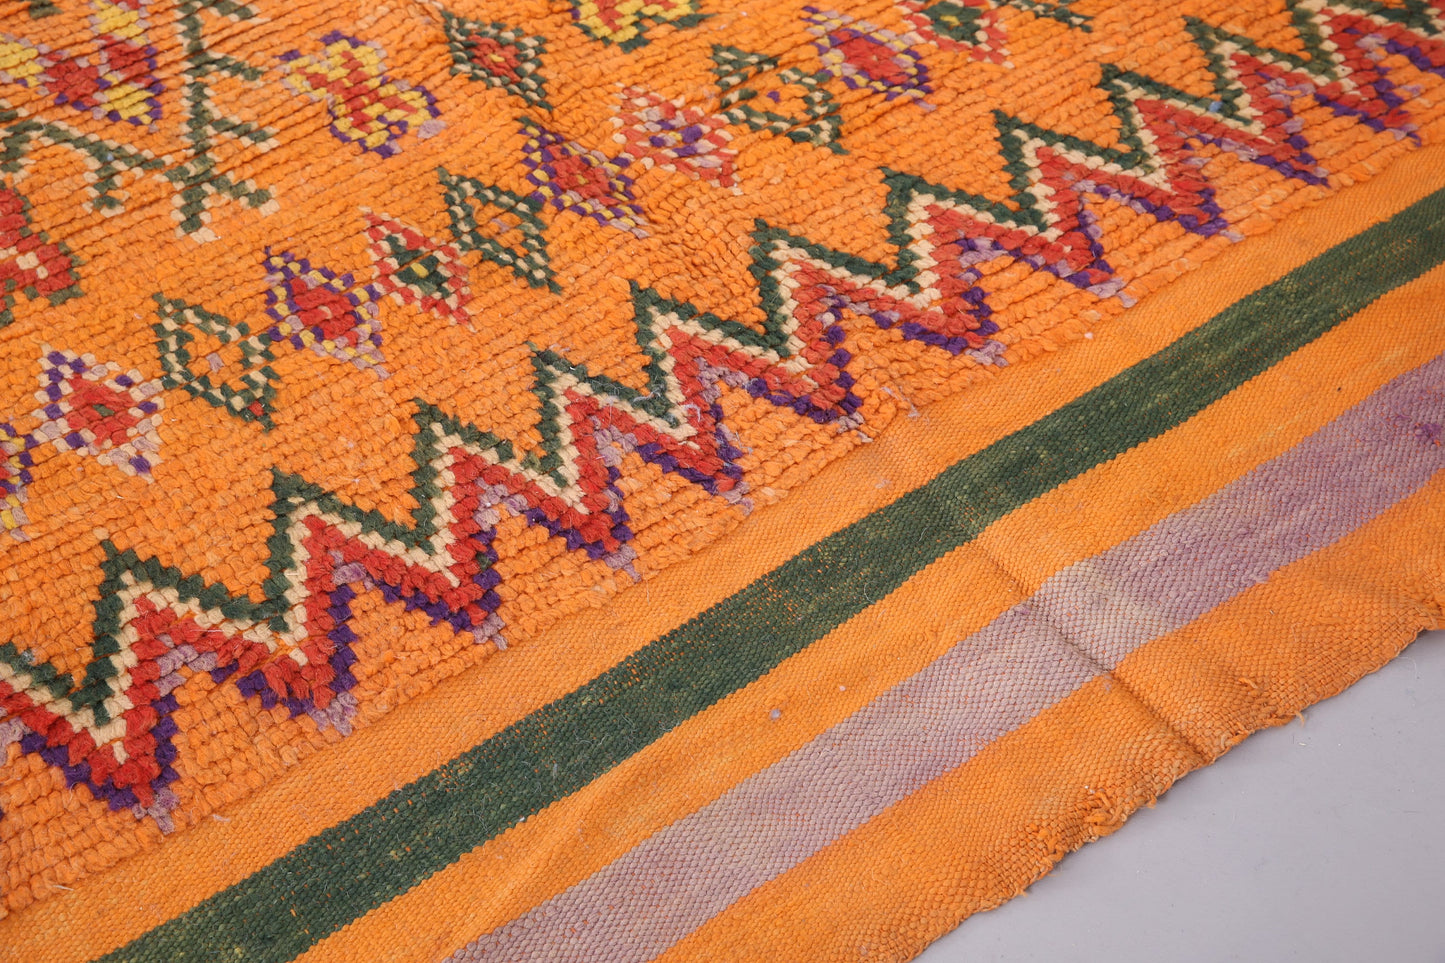 Oranger marokkanischer Vintage-Teppich 5,2 FT x 9,8 FT - marokkanischer Vintage-Teppich - handgemachter Azilal-Teppich - blasser Teppich - alter Boho-Teppich - alter Tribal-Teppich